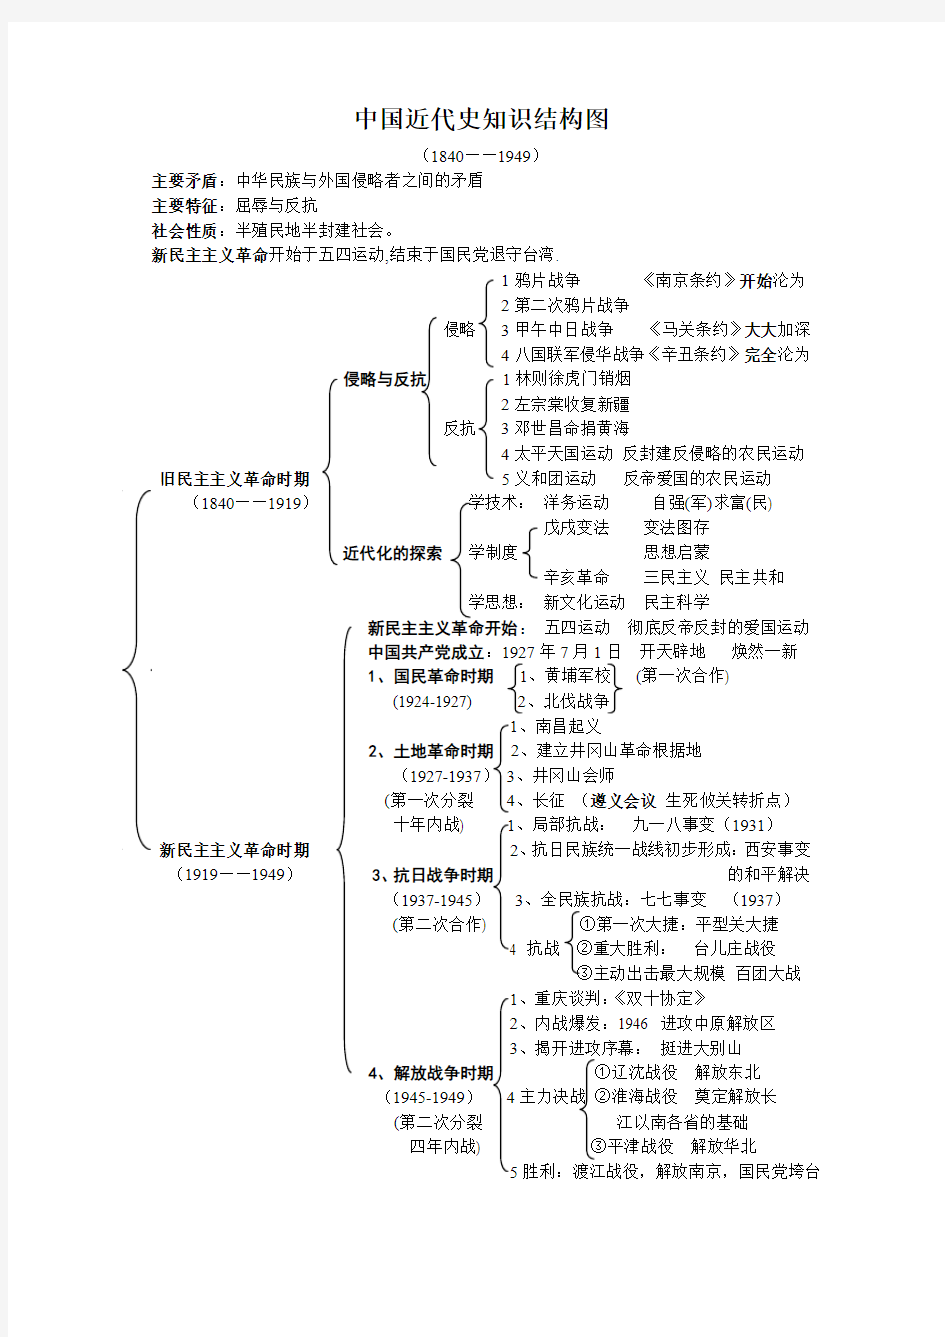 中国近代史知识结构图